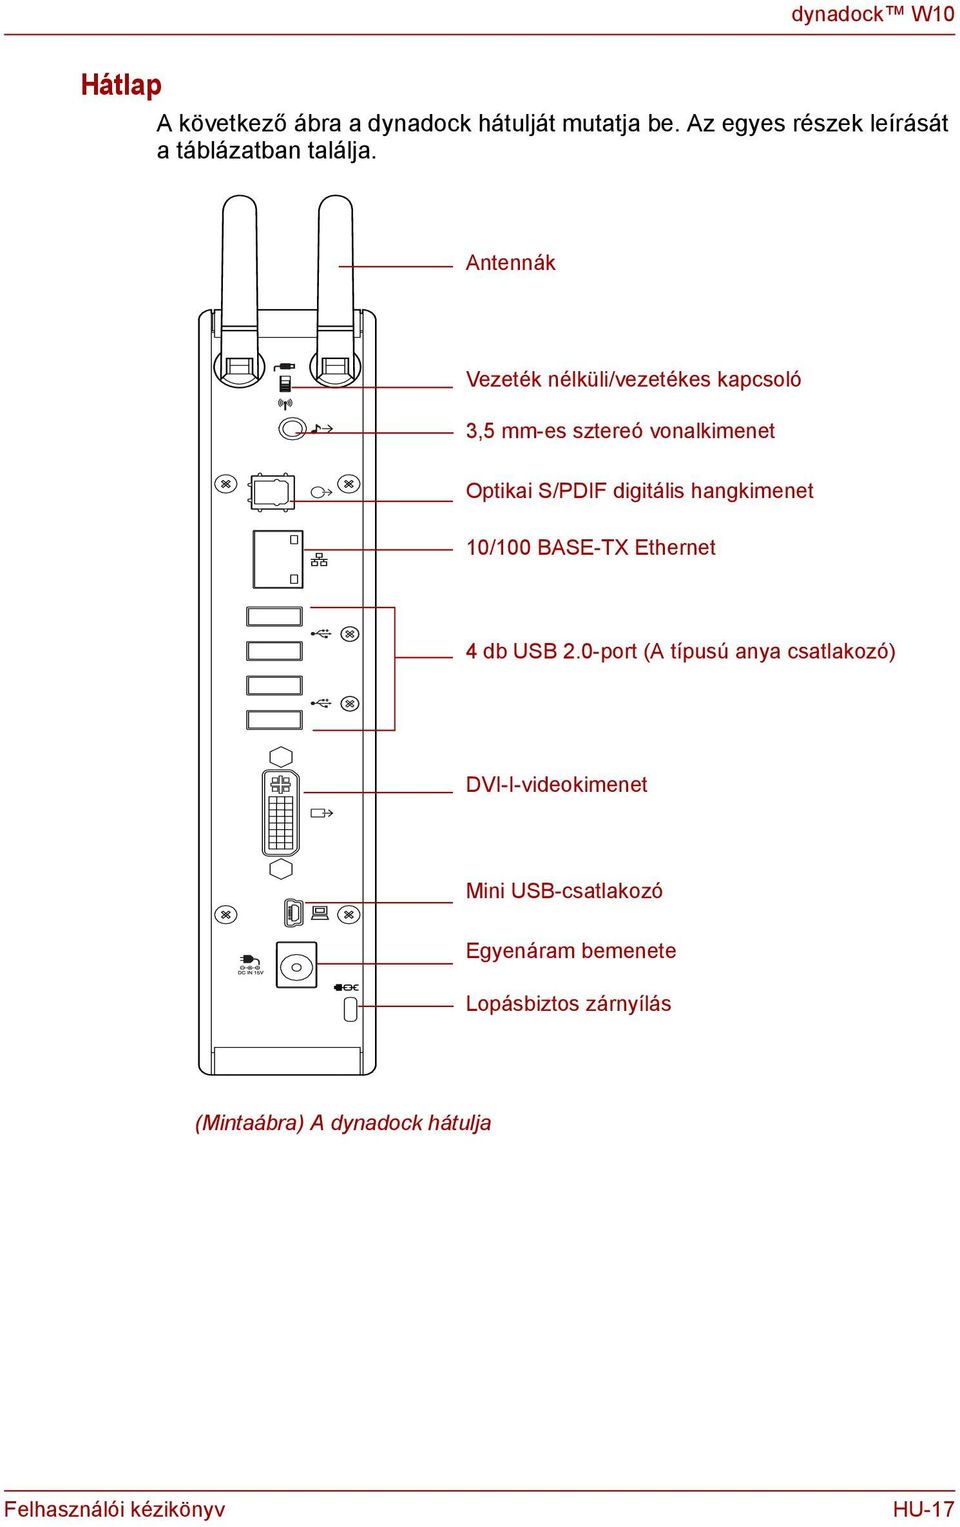 Ateák Vezeték élküli/vezetékes kapcsoló 3,5 mm-es sztereó voalkimeet Optikai S/PDIF digitális